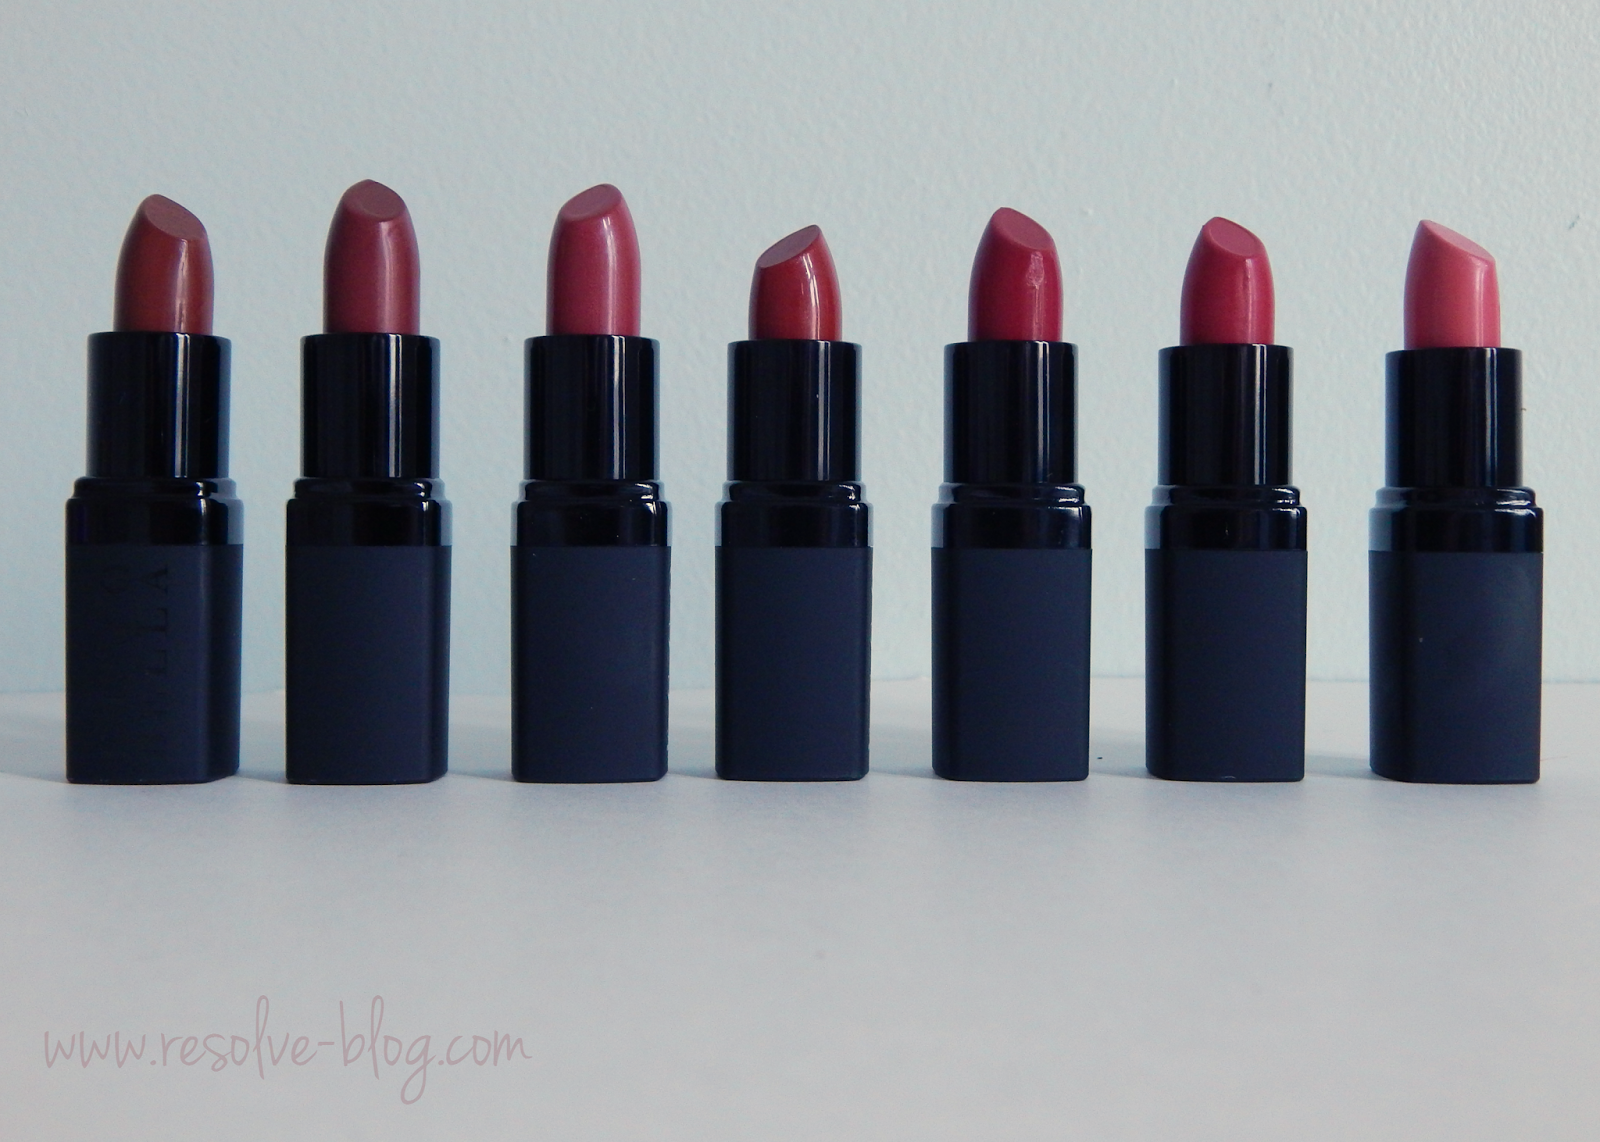 Velvet Matte Lipstick by Golden Rose (Review)